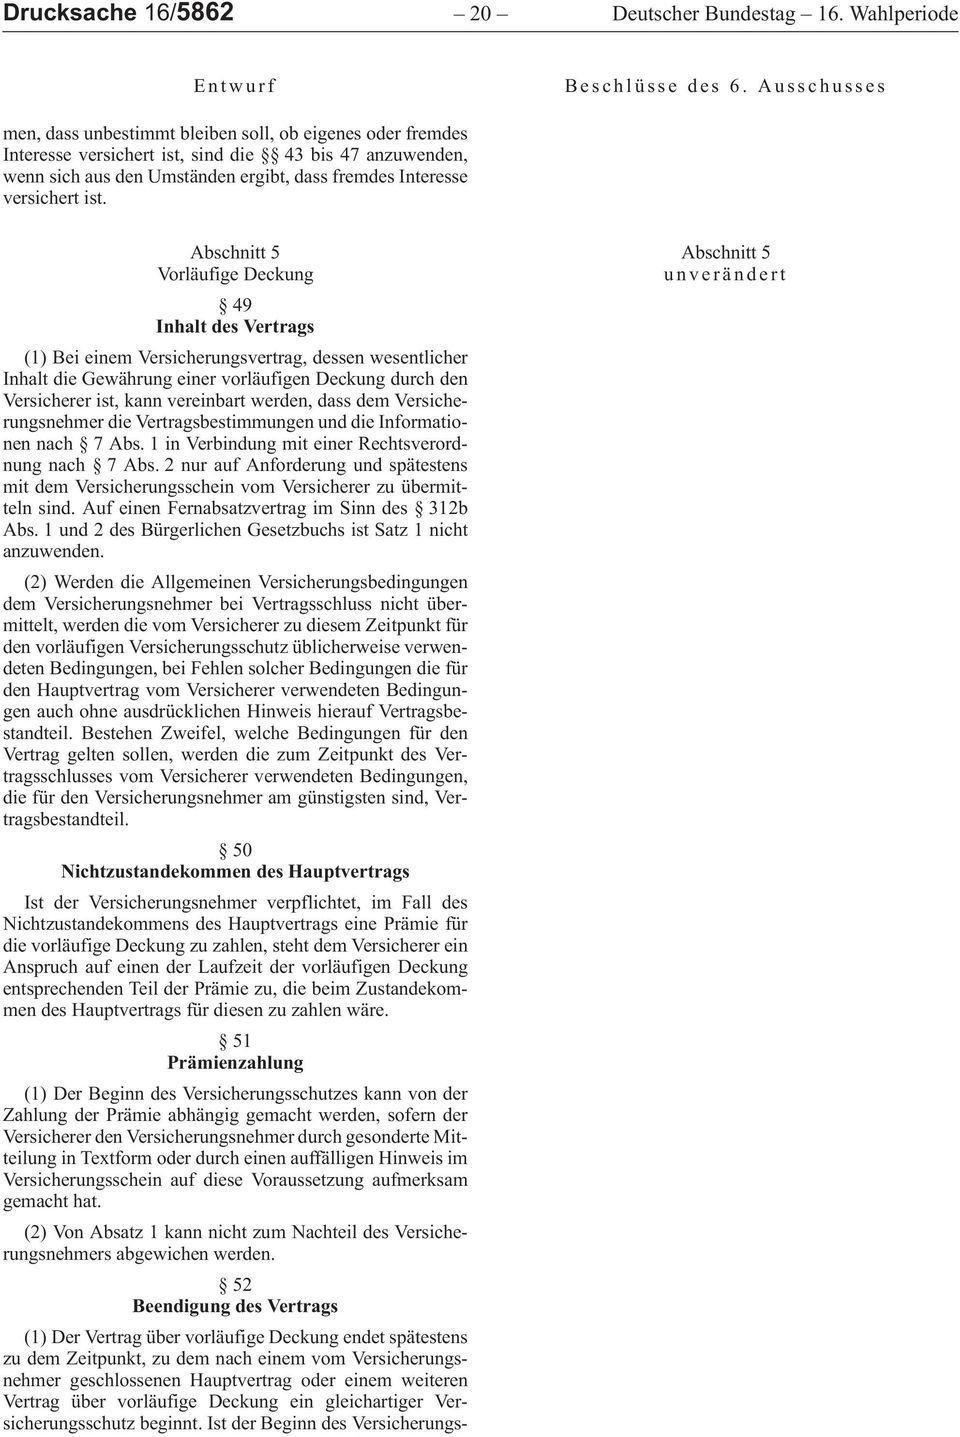 Abschnitt 5 Vorläufige Deckung 49 Inhalt des Vertrags (1)BeieinemVersicherungsvertrag,dessenwesentlicher InhaltdieGewährungeinervorläufigenDeckungdurchden